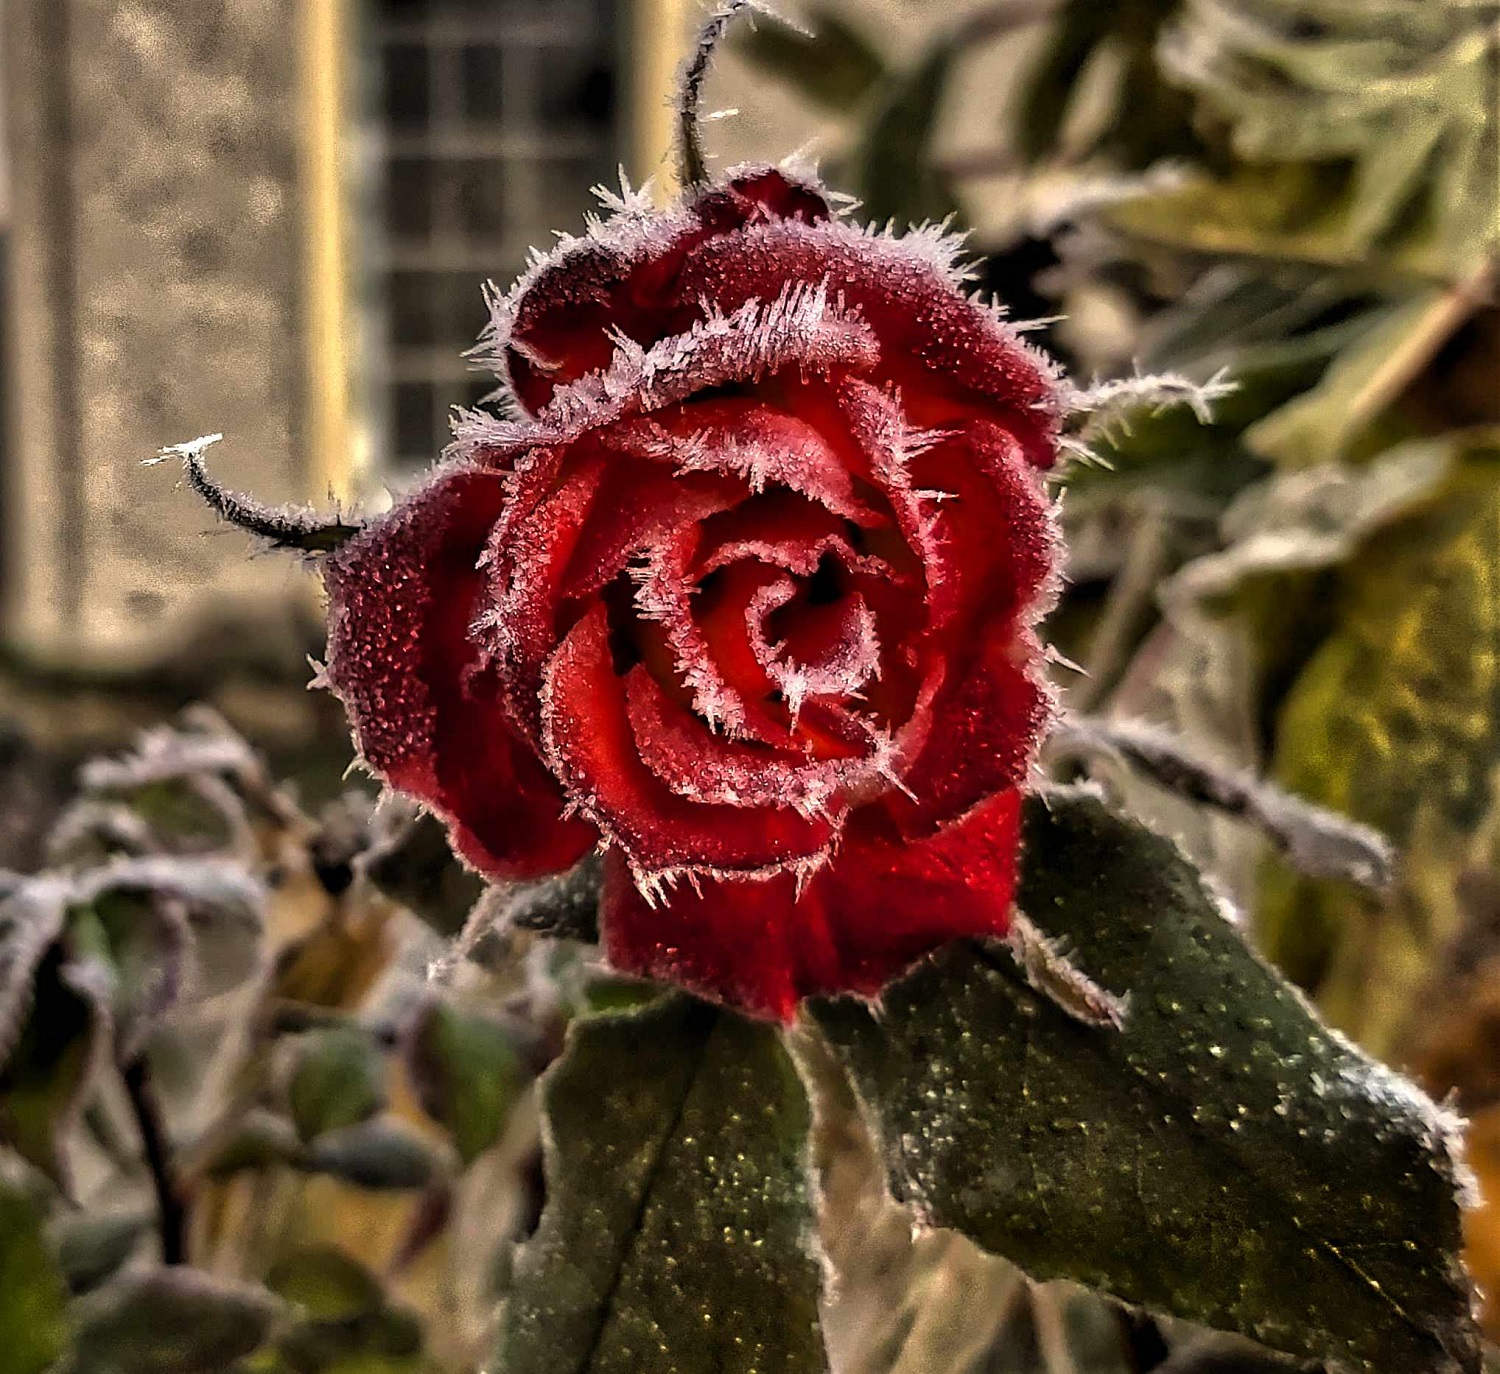 A Hoar Frost Rose in New Zealand